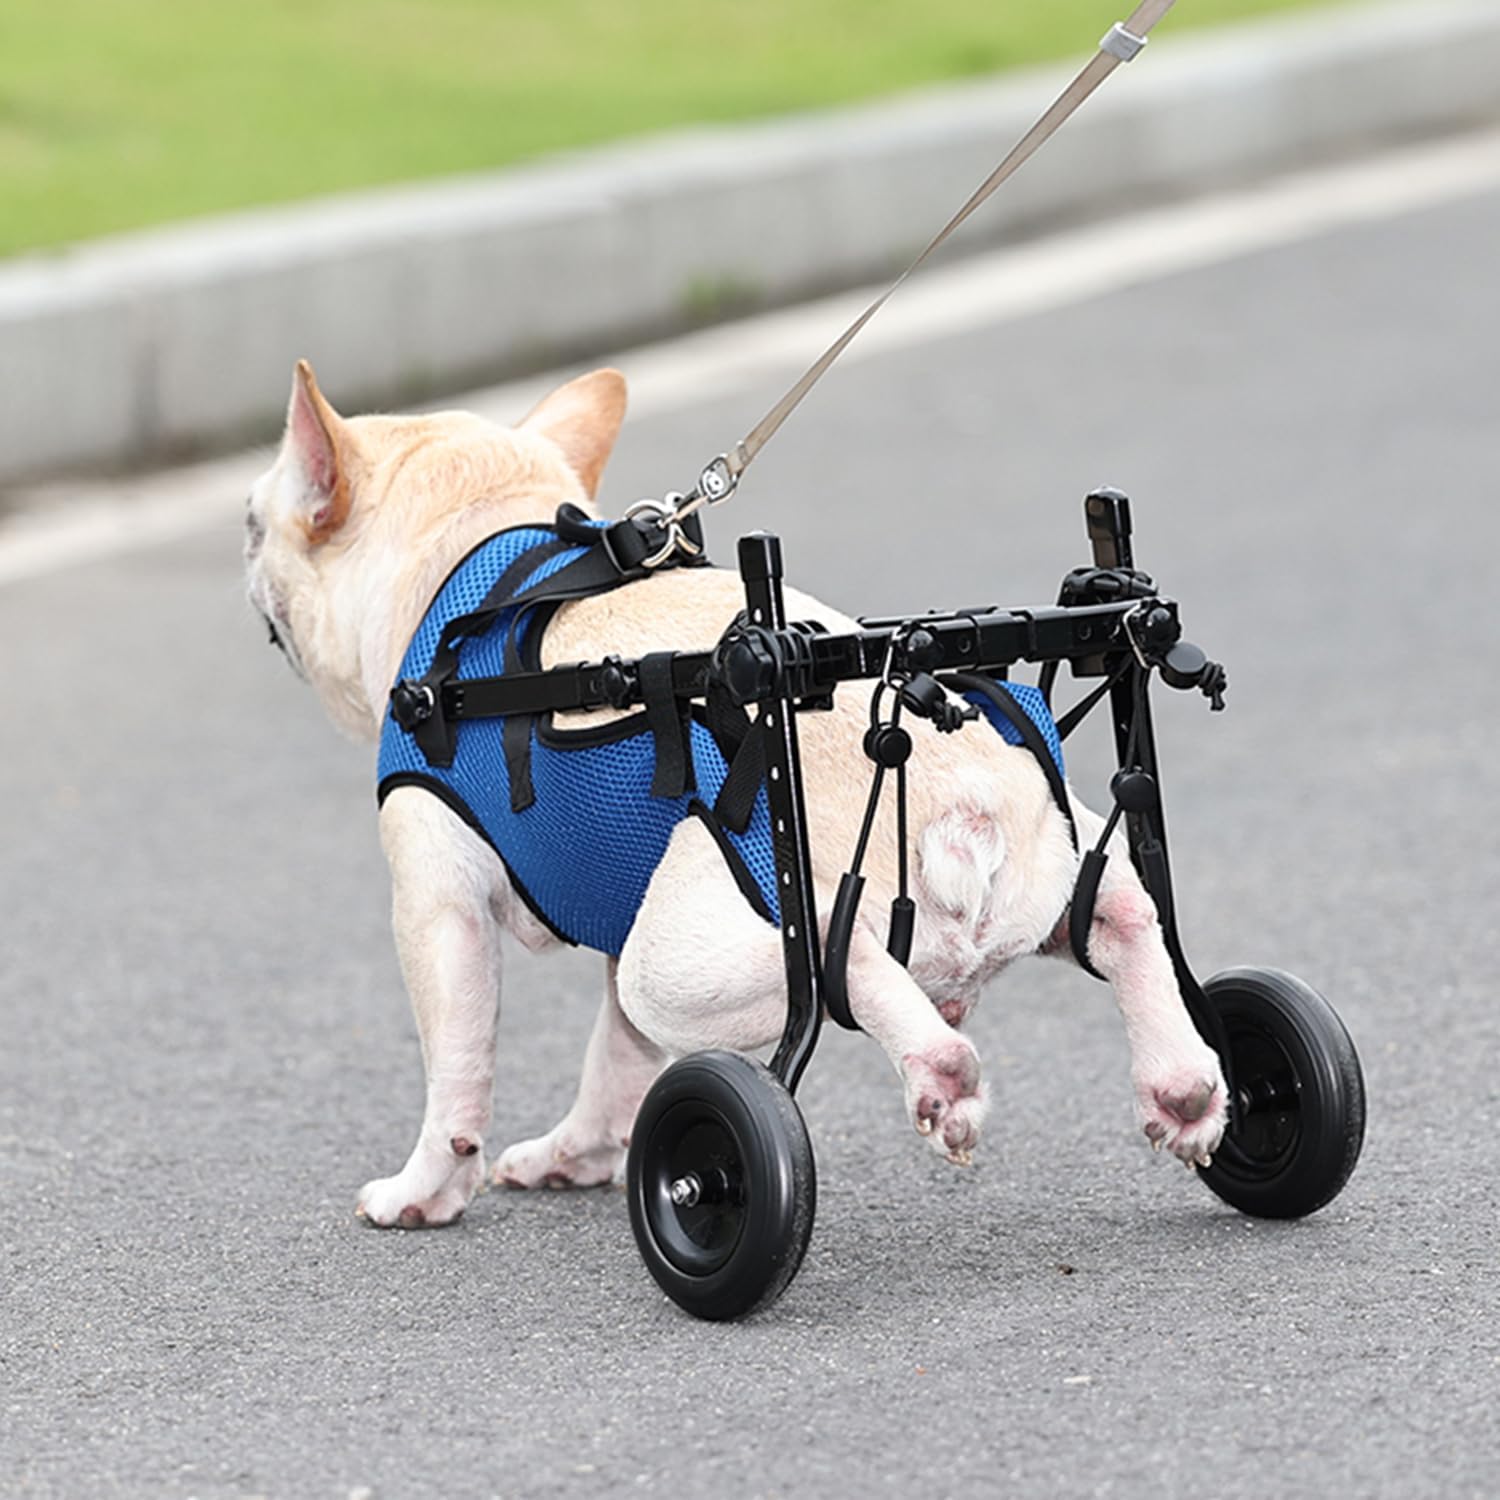 ویلچر سگ قابل تنظیم برای پاهای پشتی  برند: LekLai  کد : W 250